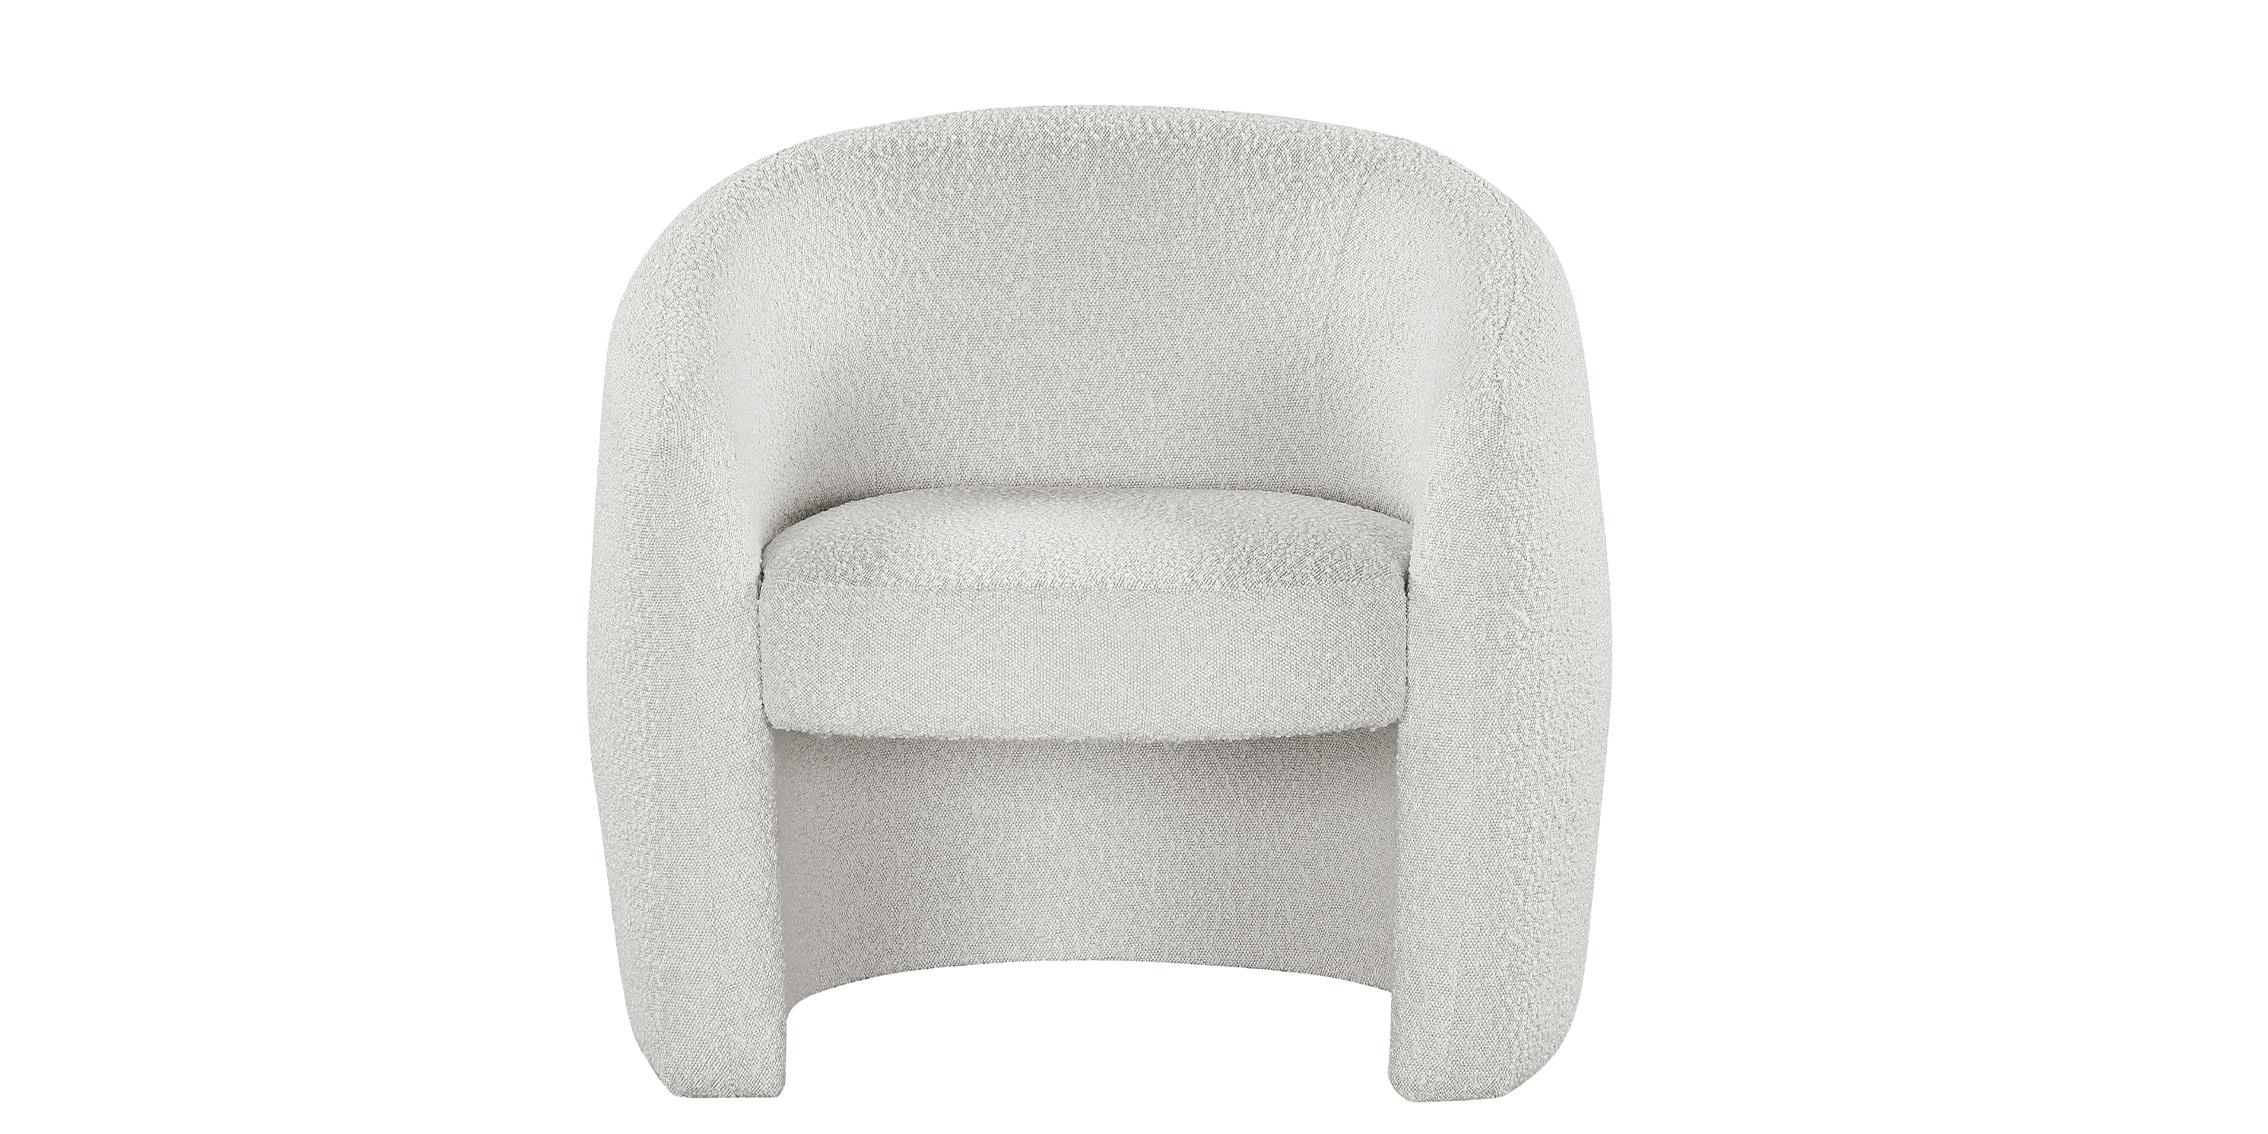 

    
543Cream-Set-2 Cream Boucle Fabric Accent Chair Set 2Pcs ACADIA 543Cream Meridian Contemporary
